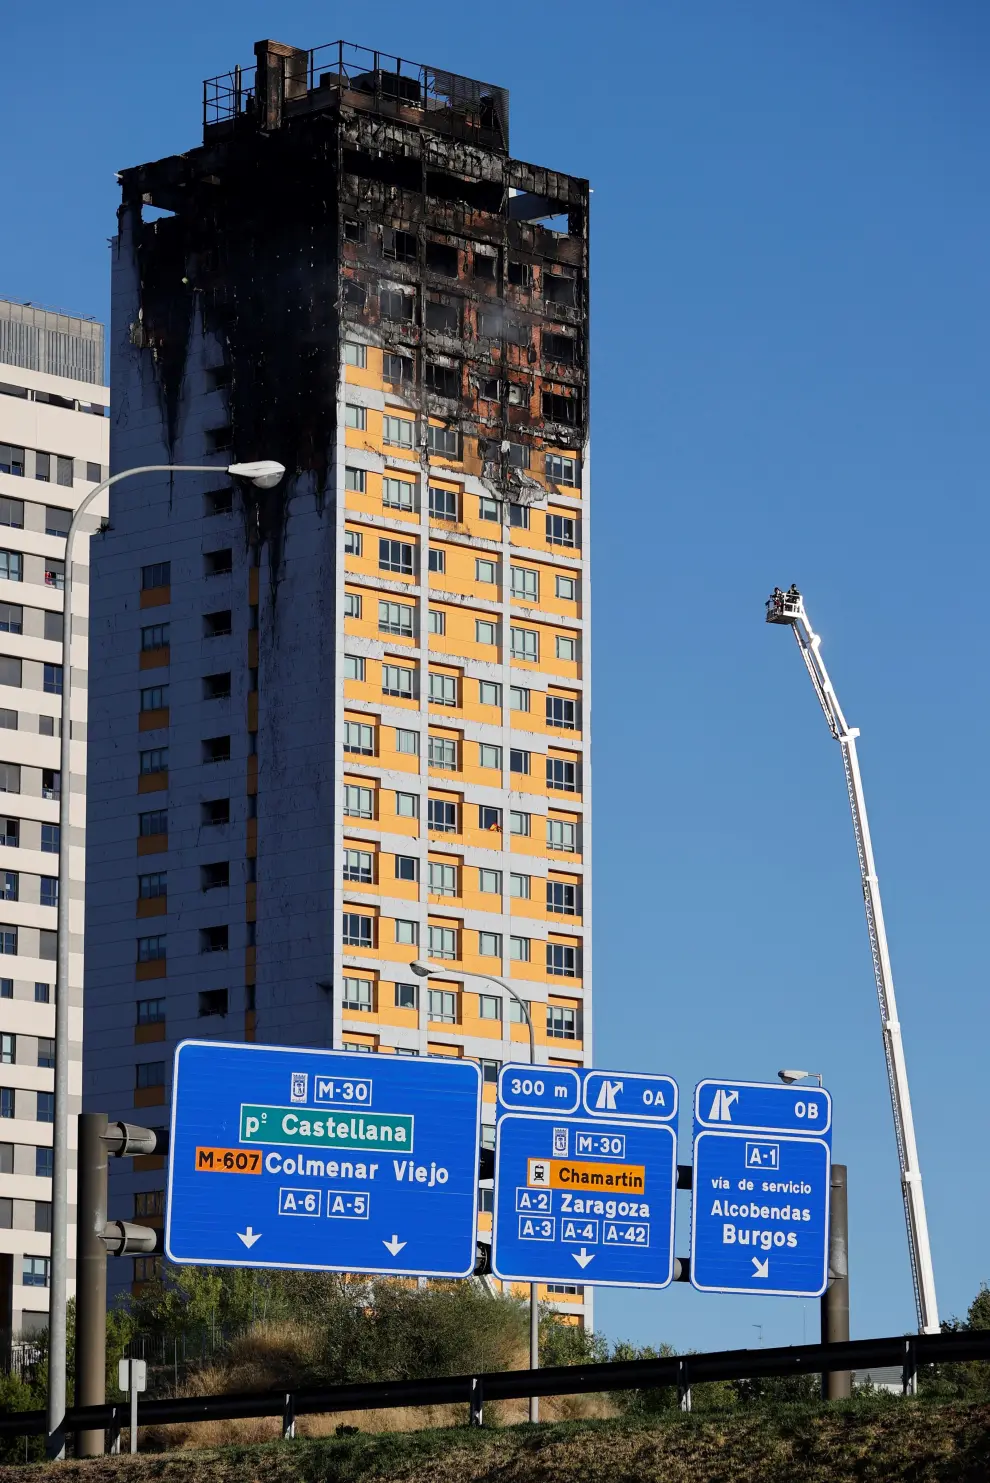 Un gran incendio devora los pisos superiores de una torre del norte de Madrid